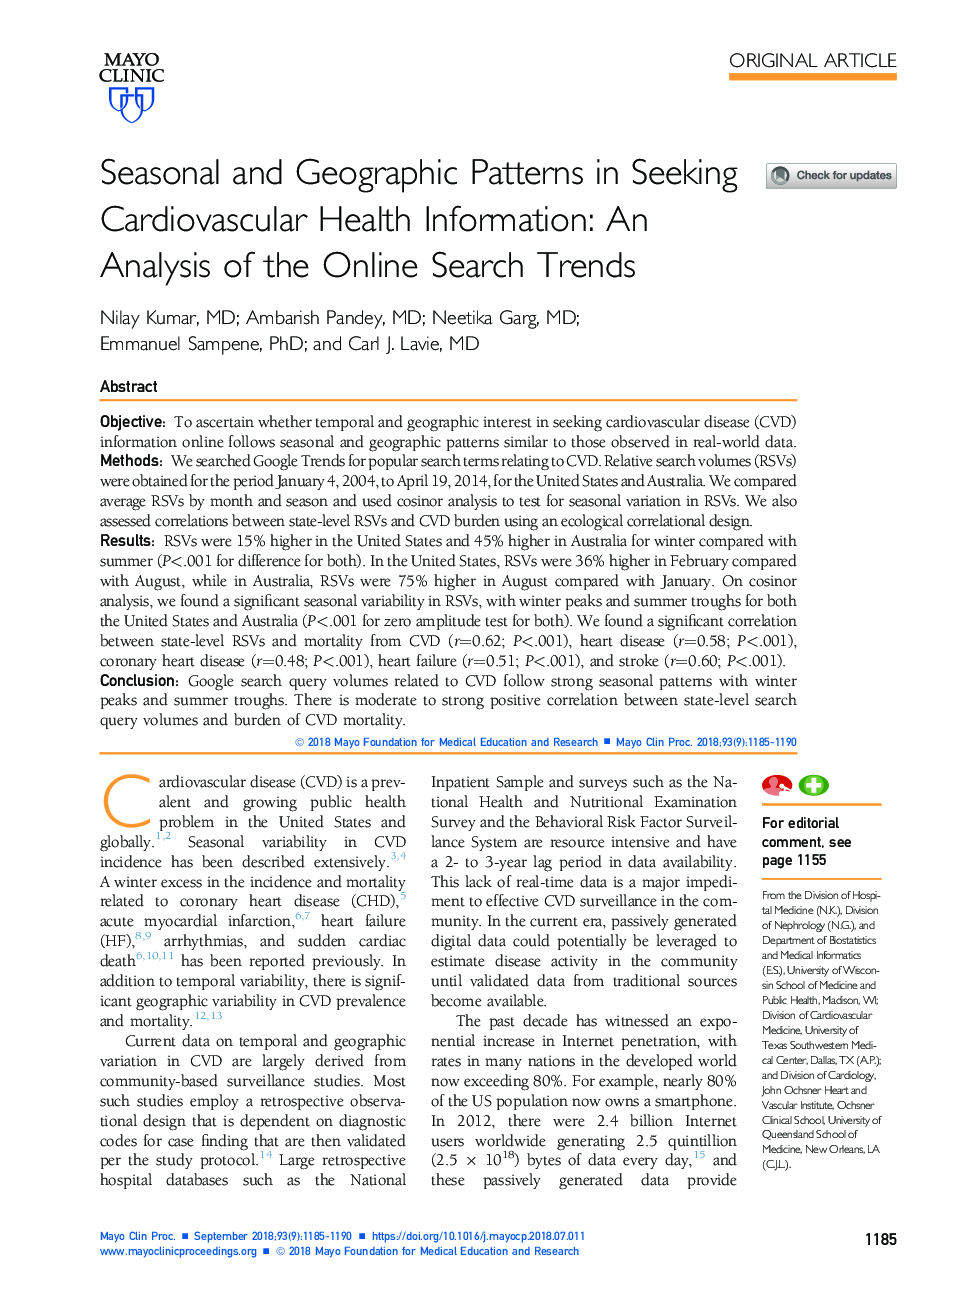 الگوهای فصلی و جغرافیایی در جستجوی اطلاعات سلامت قلب و عروق: تجزیه و تحلیل روند جستجوی آنلاین